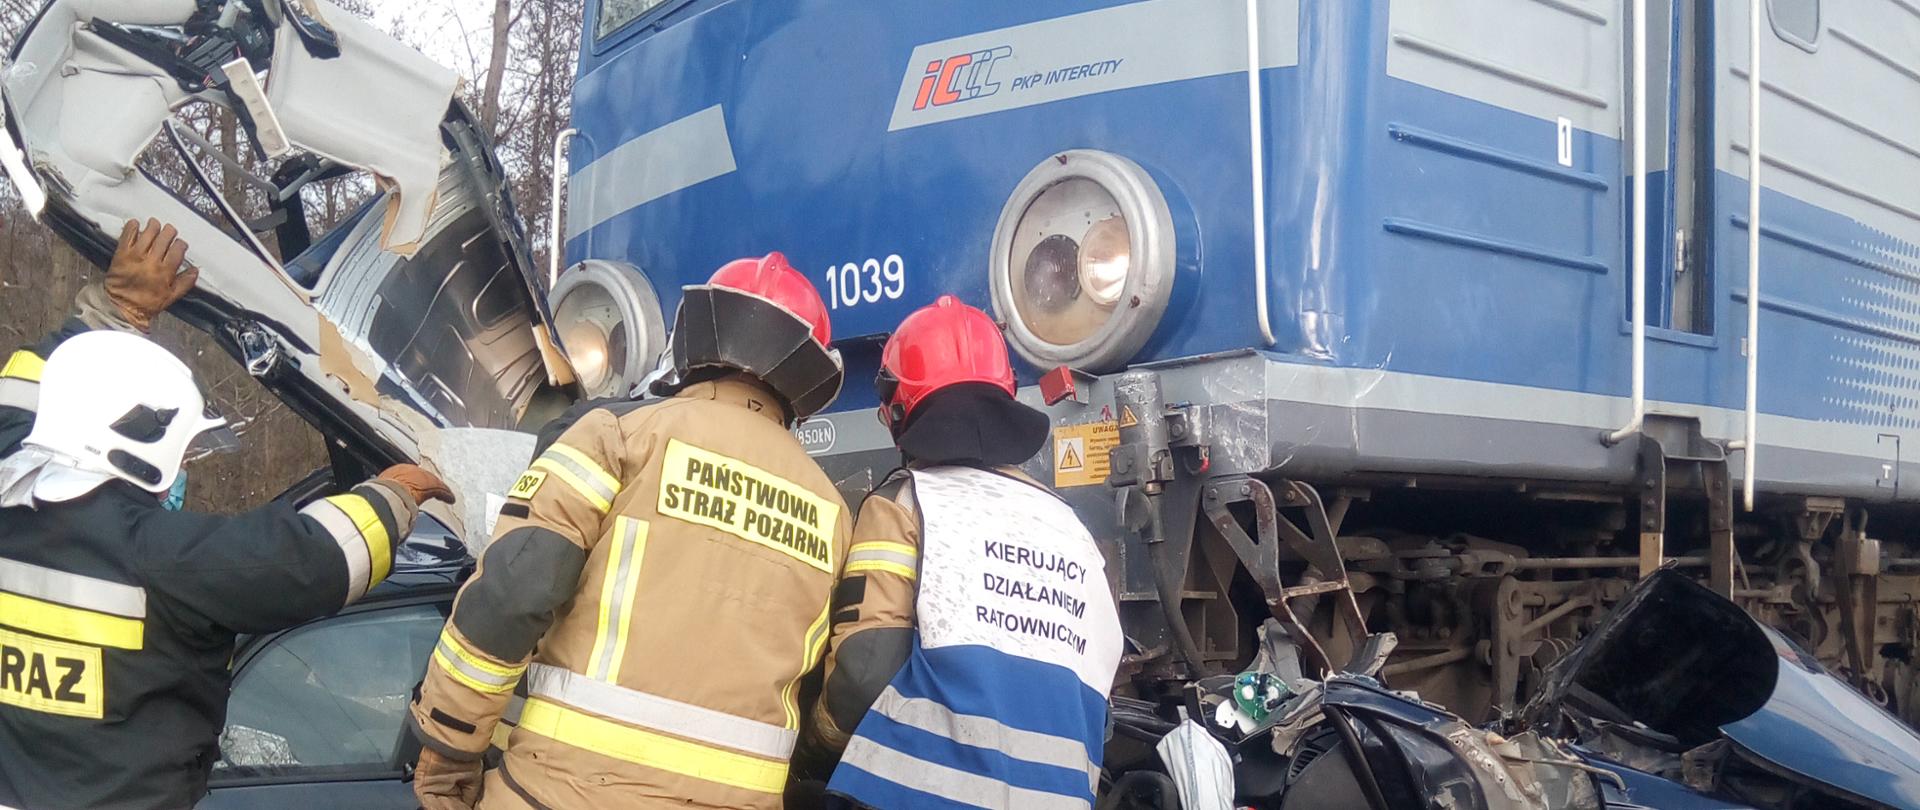 Na zdjęciu widać trzech strażaków pracujących przy akcji ratowniczej. Niebieski pociąg zmiażdżył samochód a jego elementy wystają z pod pociągu.